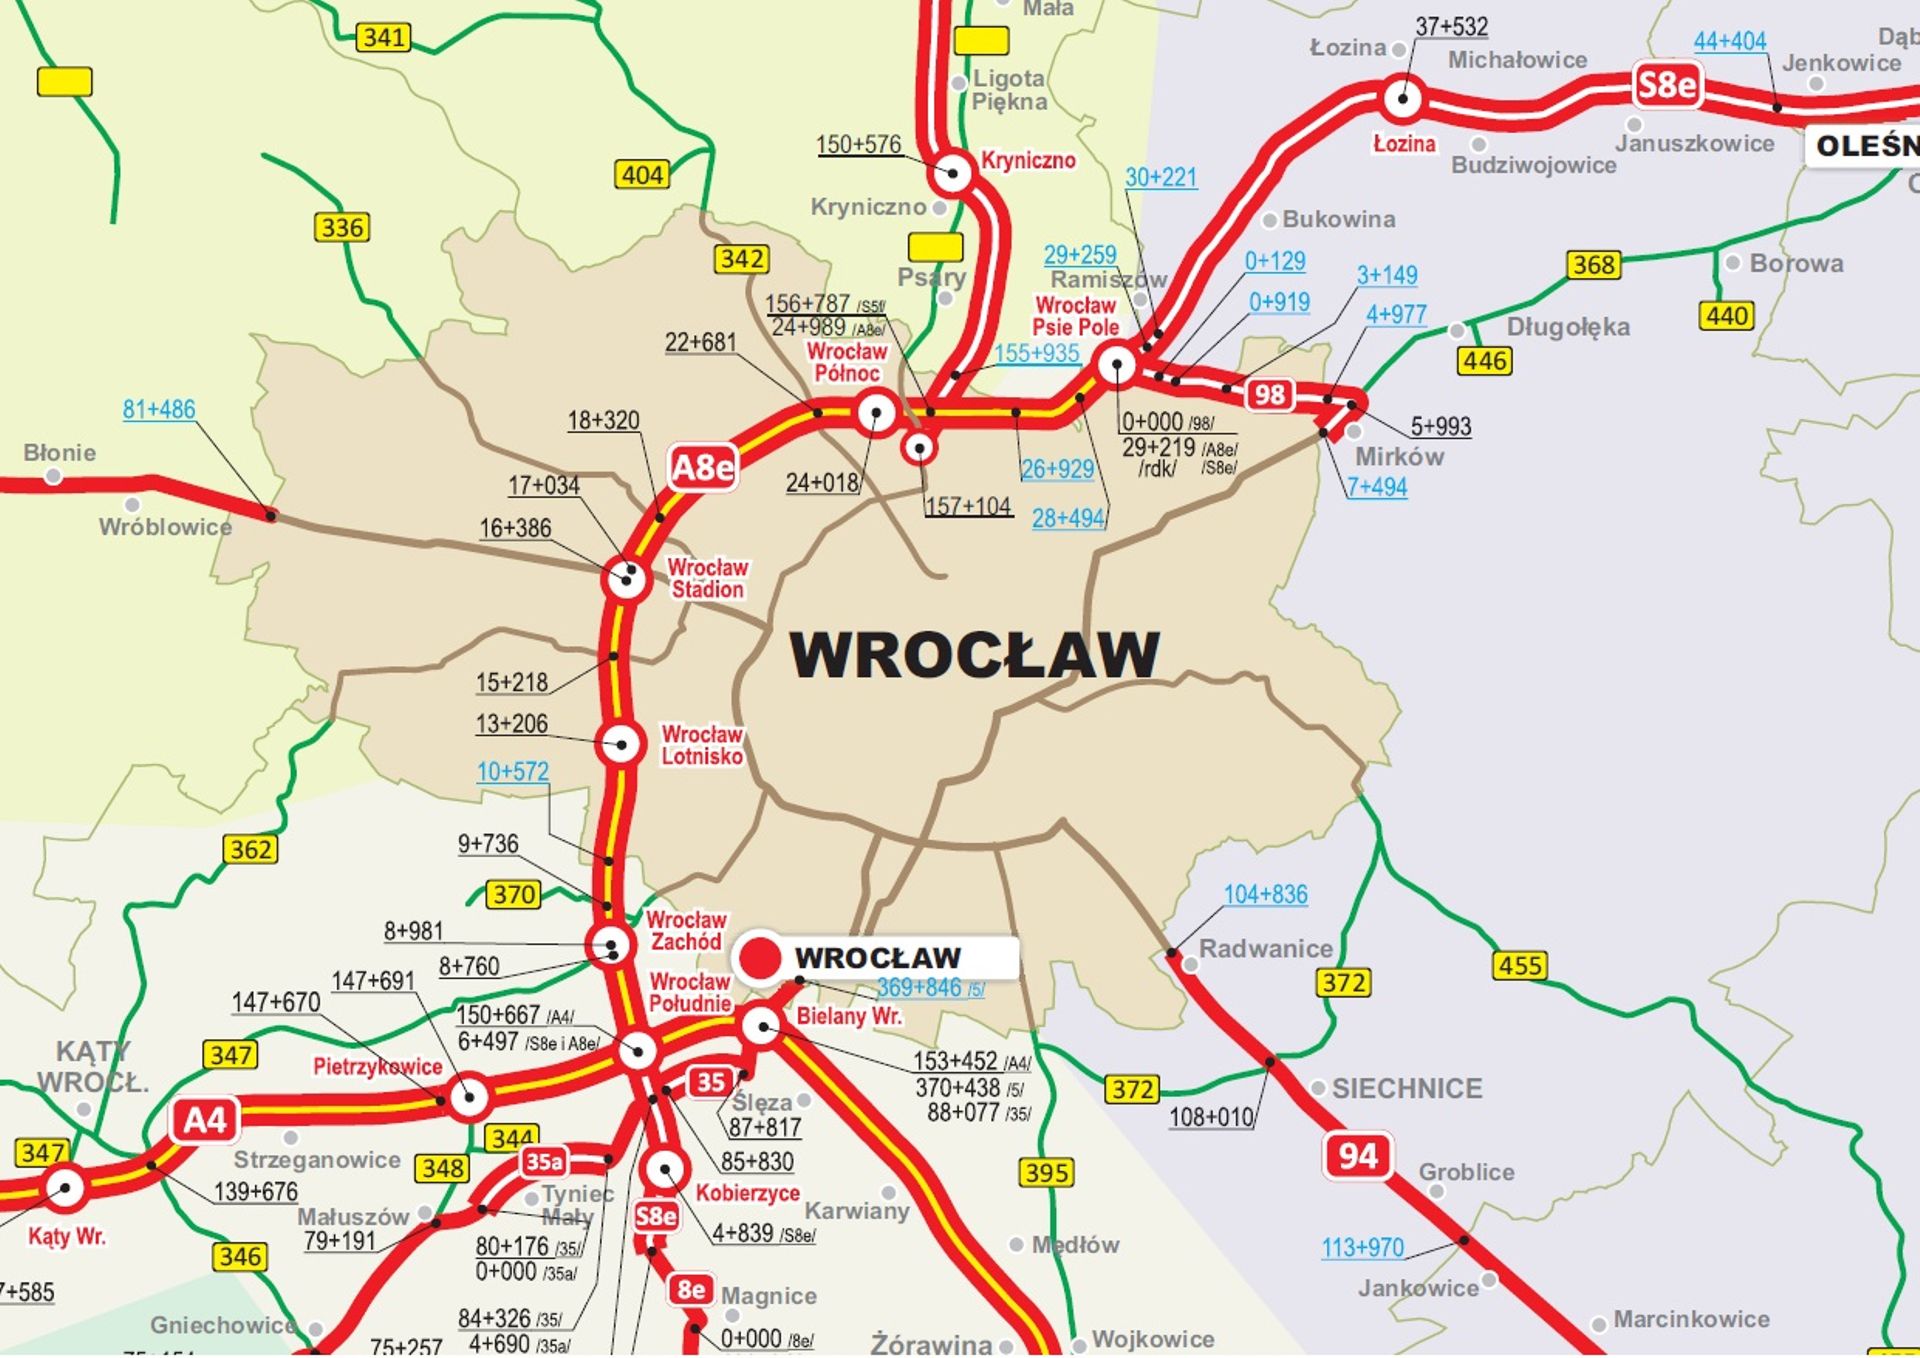 Jazda Autostradową Obwodnicą Wrocławia i autostradą A4 będzie bezpieczniejsza i wygodniejsza